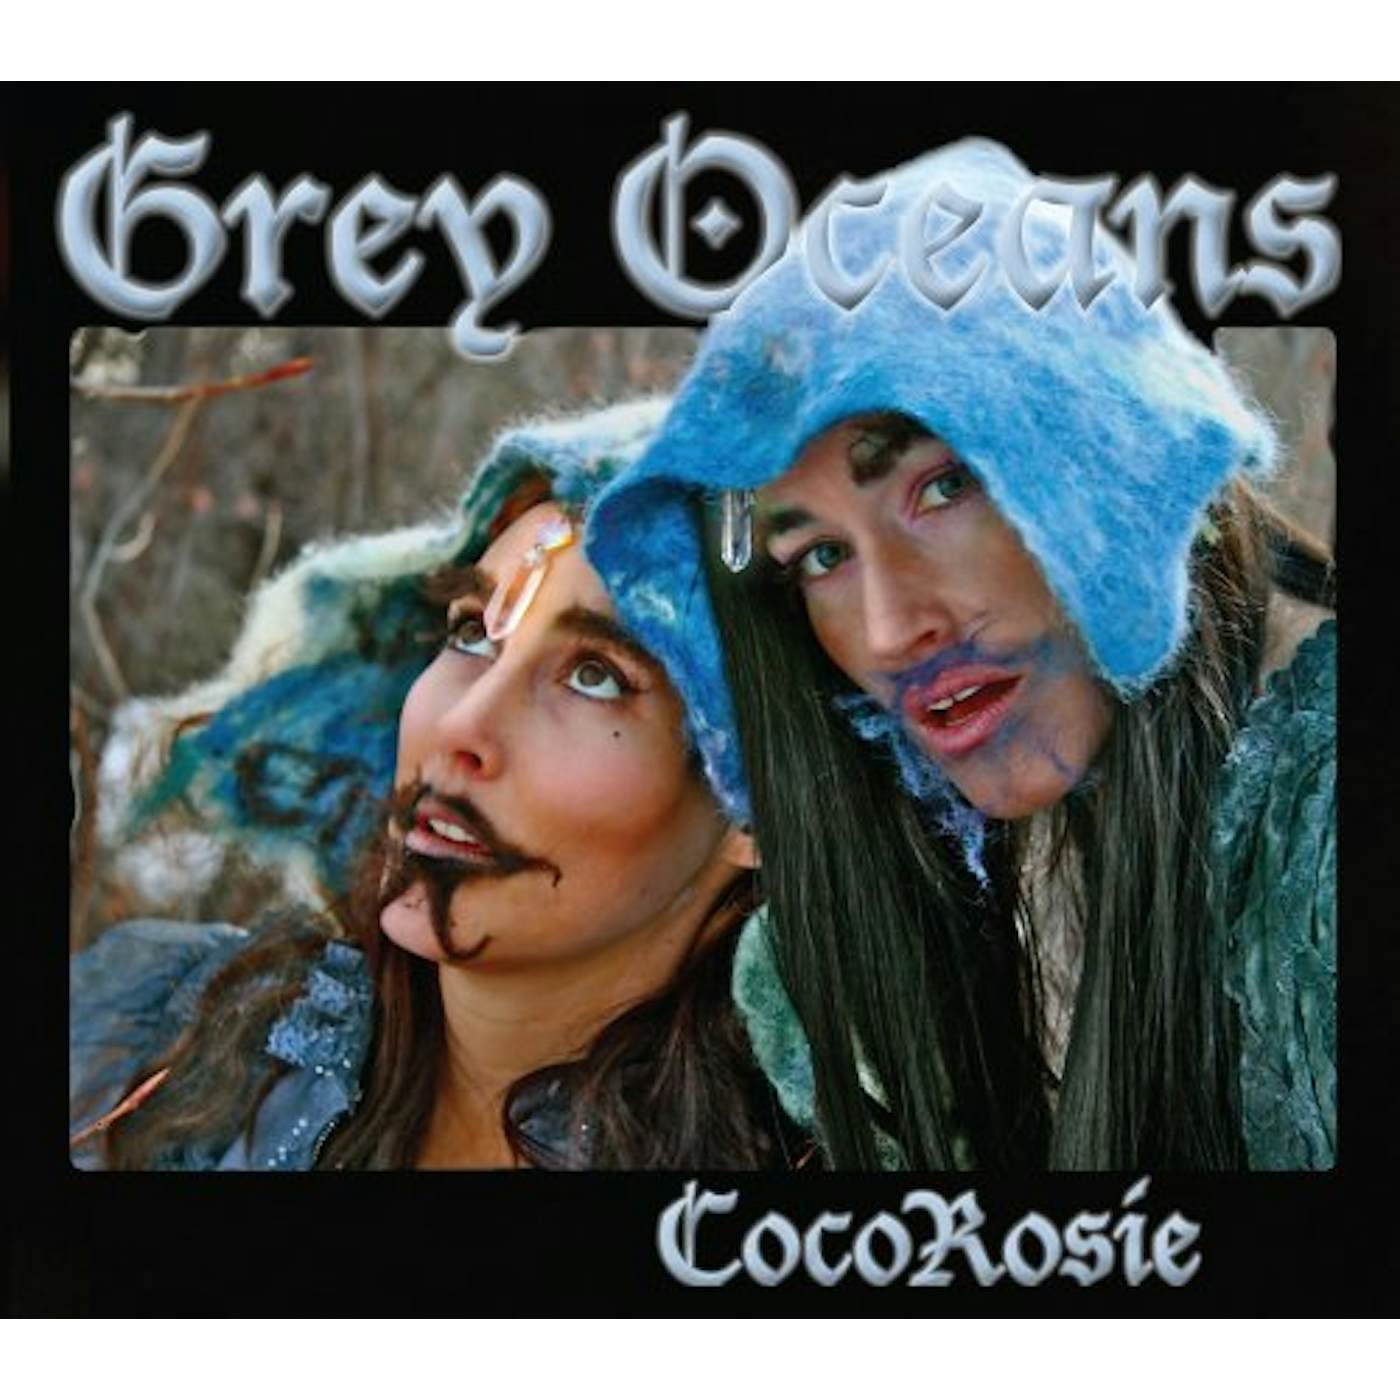 CocoRosie GREY OCEANS CD